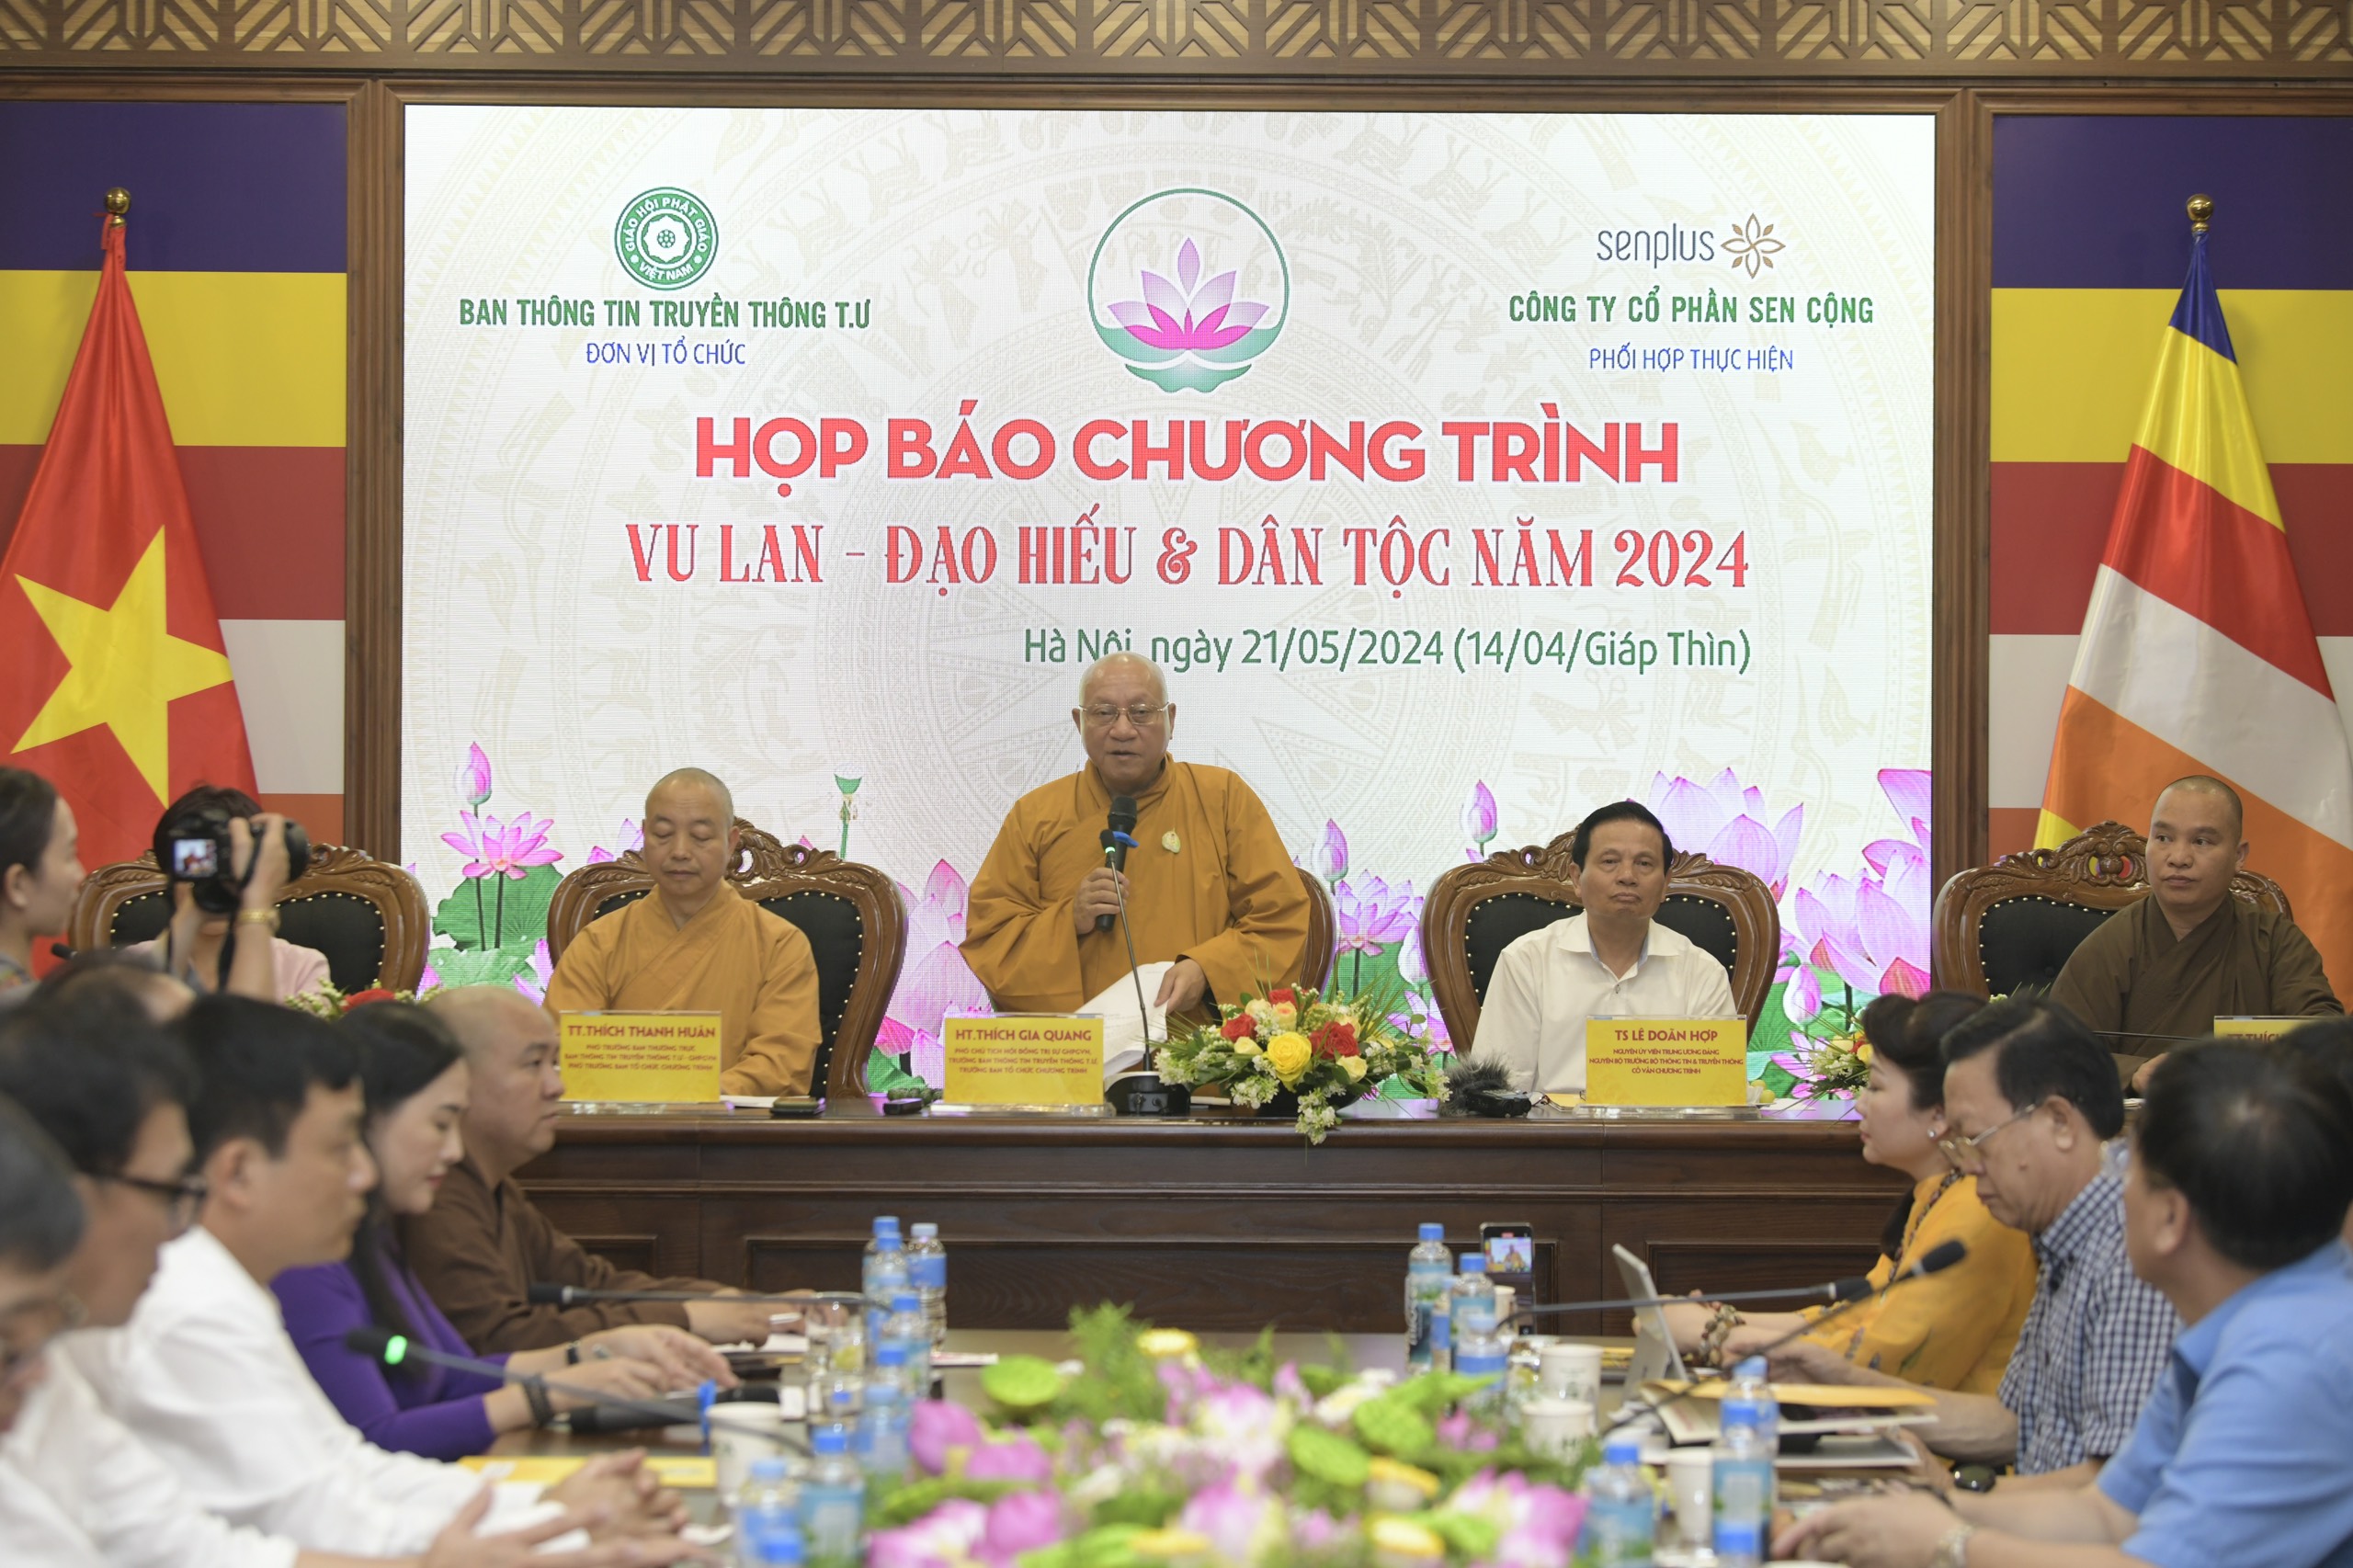 Giáo hội Phật giáo Việt Nam tổ chức chương trình nghệ thuật đặc biệt - Ảnh 1.